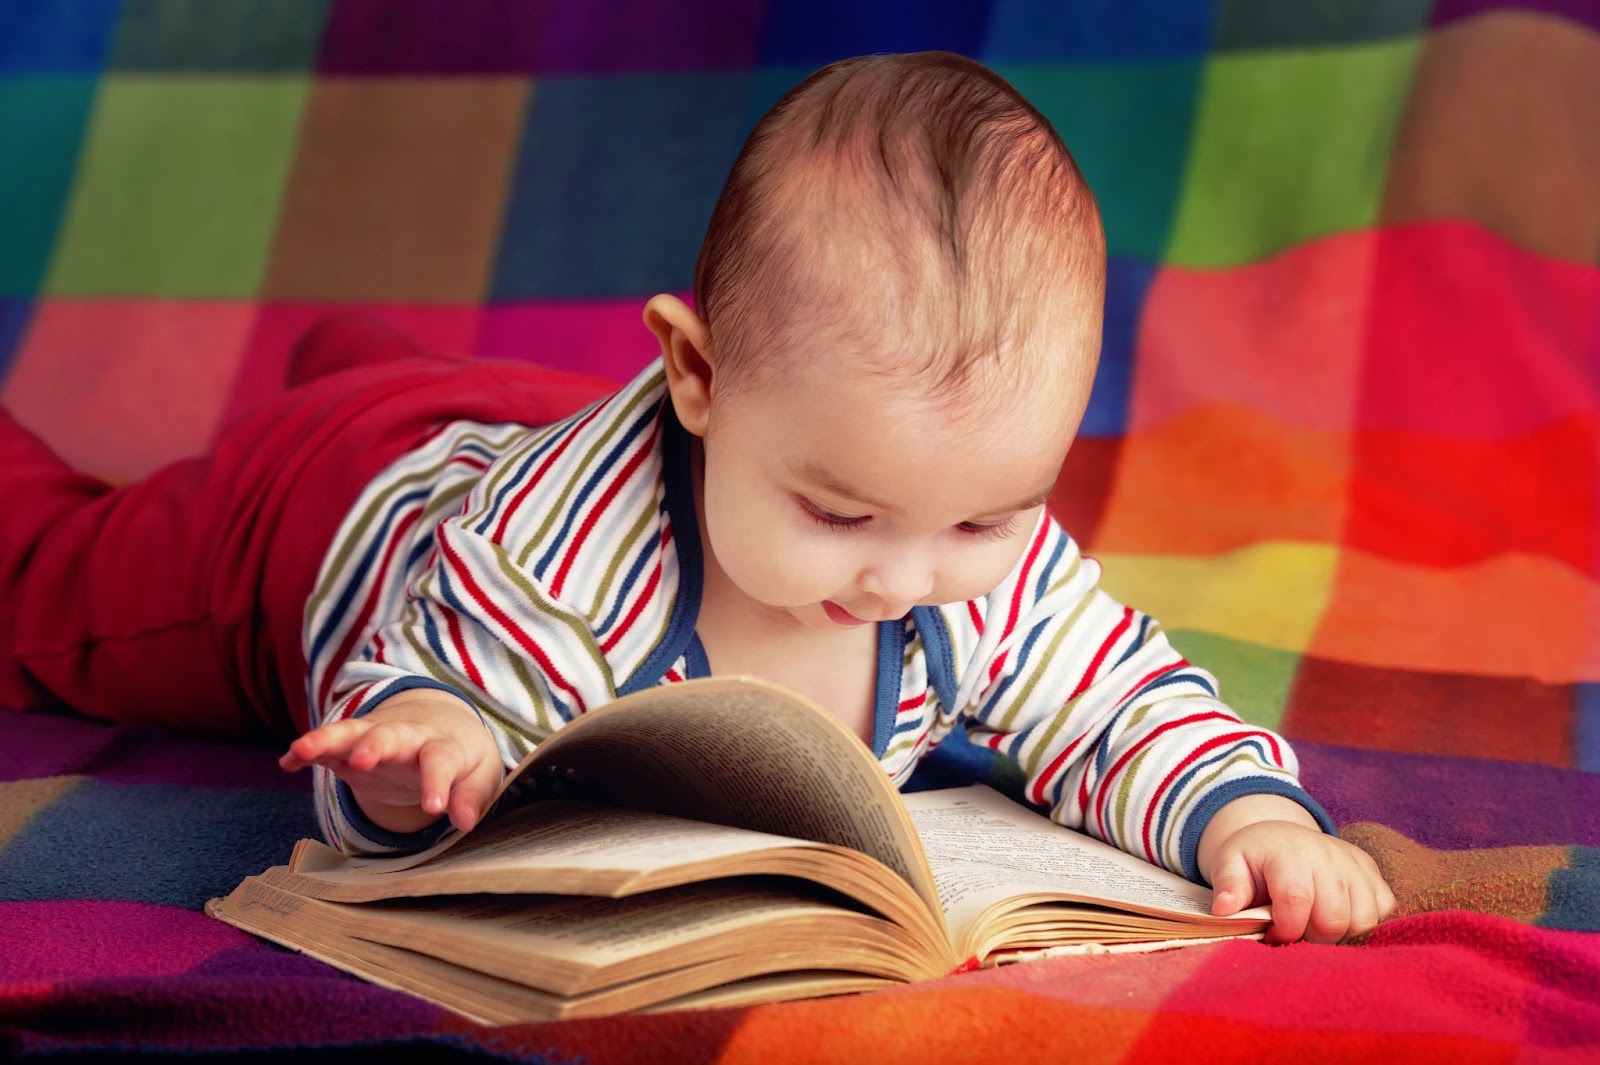 Kumpulan Foto Bayi Bayi Lucu Banget Sedang Membaca Buku 2016